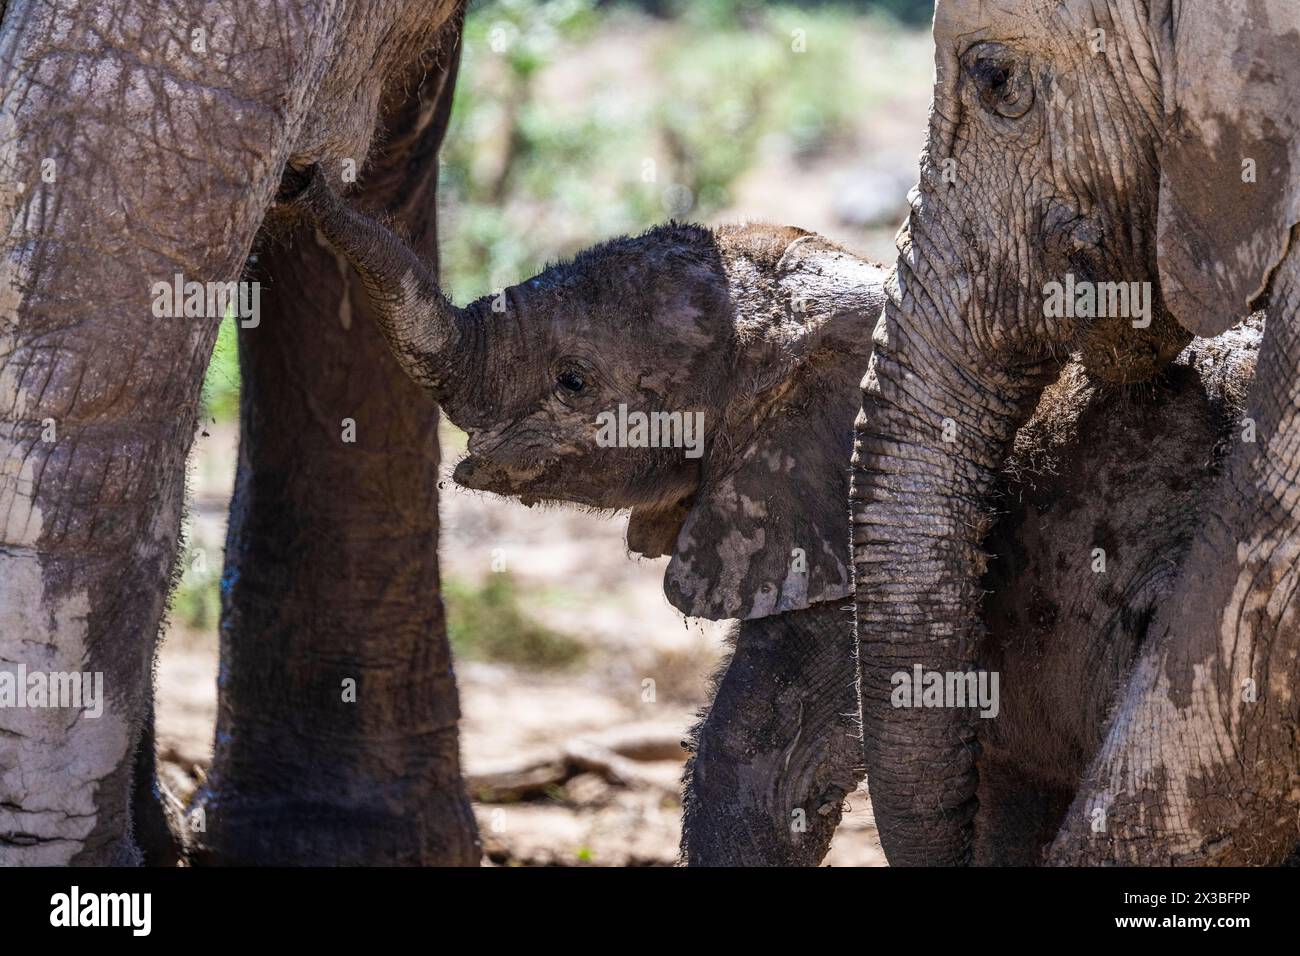 Éléphant d'Afrique (Loxodonta africana) bébé à tétine, Addo Elephant National Park, Eastern Cape, Afrique du Sud Banque D'Images